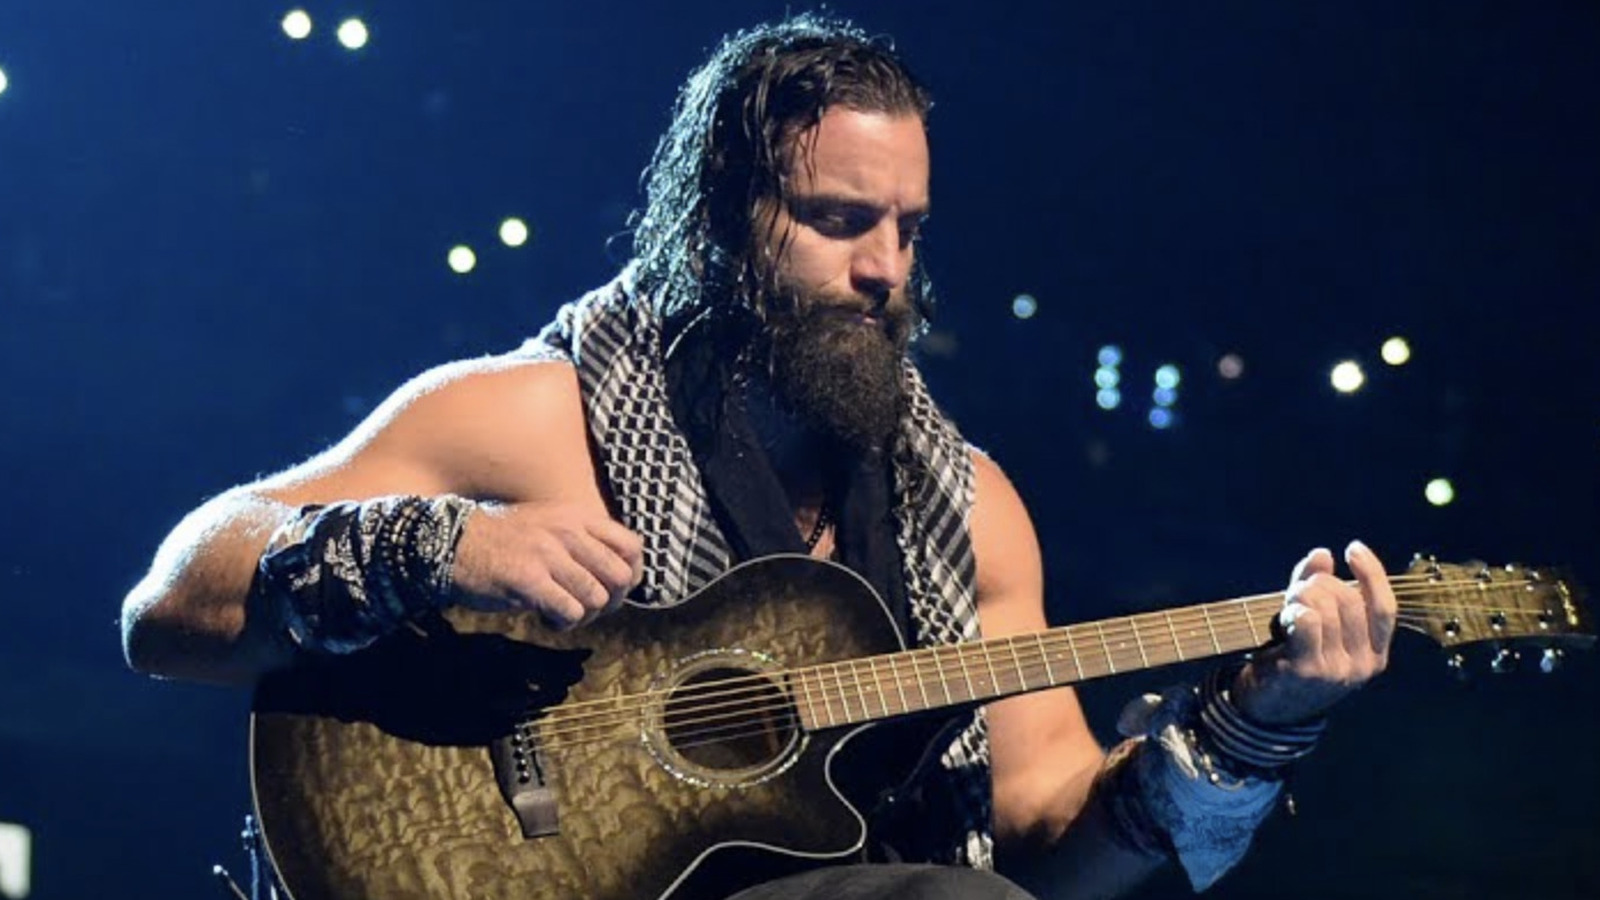 Elias recuerda su mandato en la WWE después de su liberación